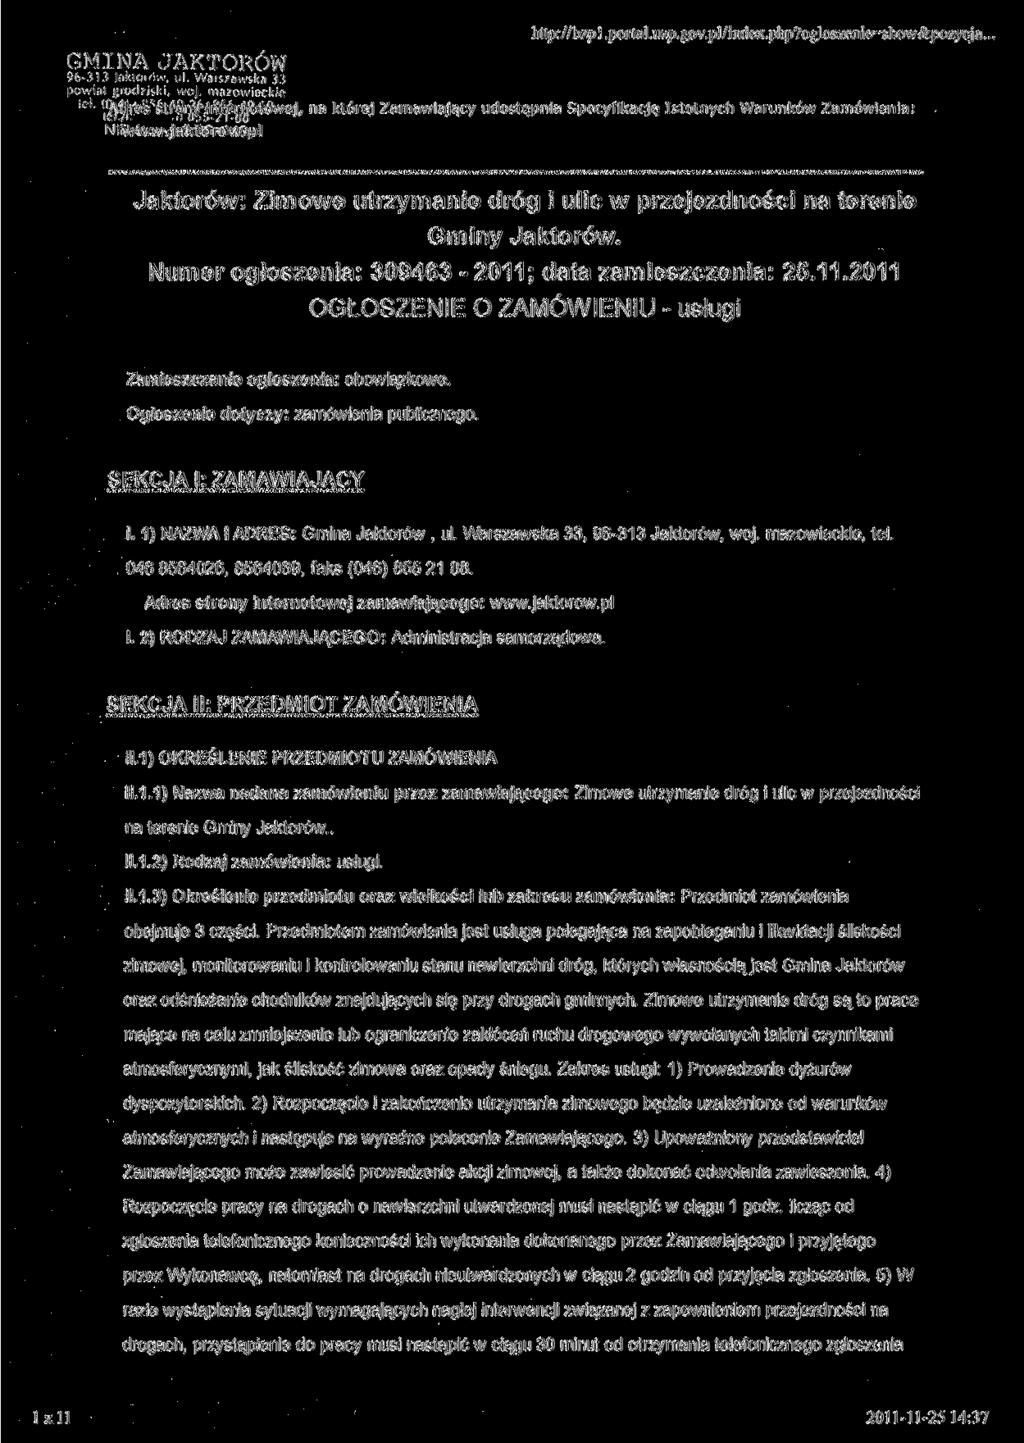 GMINA JAKTORÓW 96-313 lakioiów. ul. Warszawska 33 powiał grodziski, woj. mazowieckie N i w w w. http://b^)l.portal.uzp.gov.pl/index.php?ogloszenie=show&pozycja.